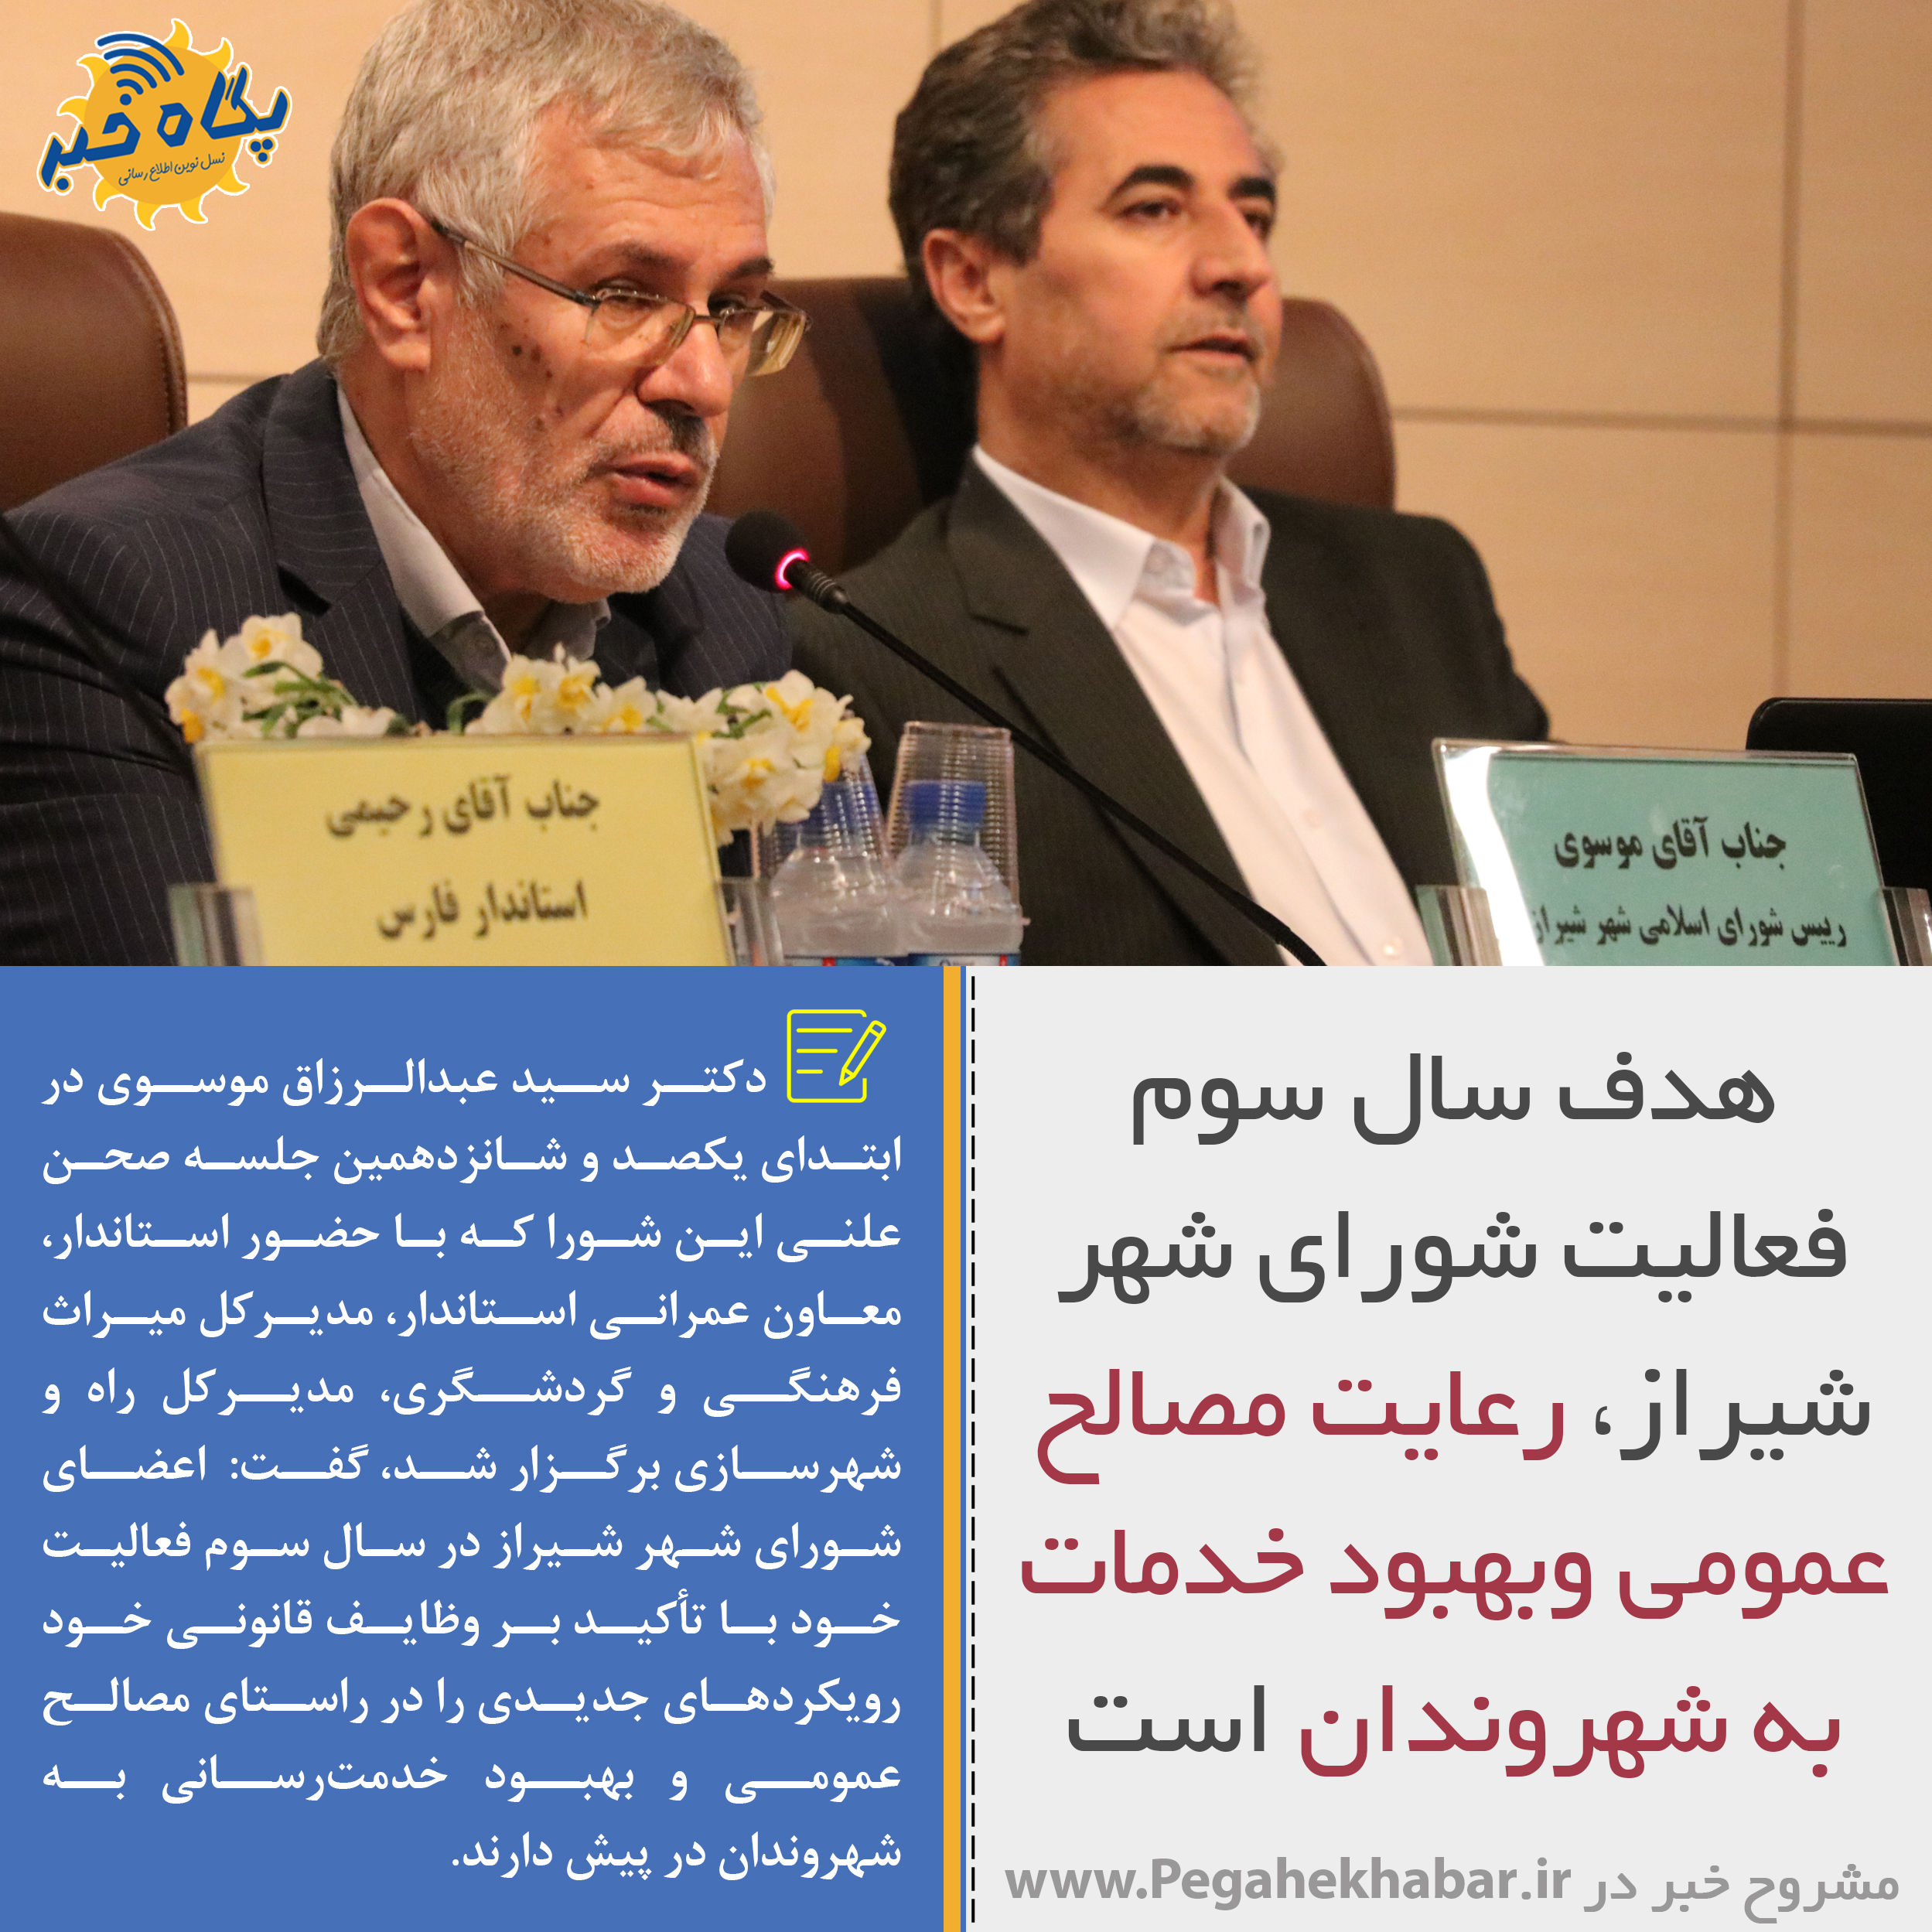 عکس نوشت|هدف سال سوم فعالیت شورای شهر شیراز، رعایت مصالح عمومی وبهبود خدمات به شهروندان است